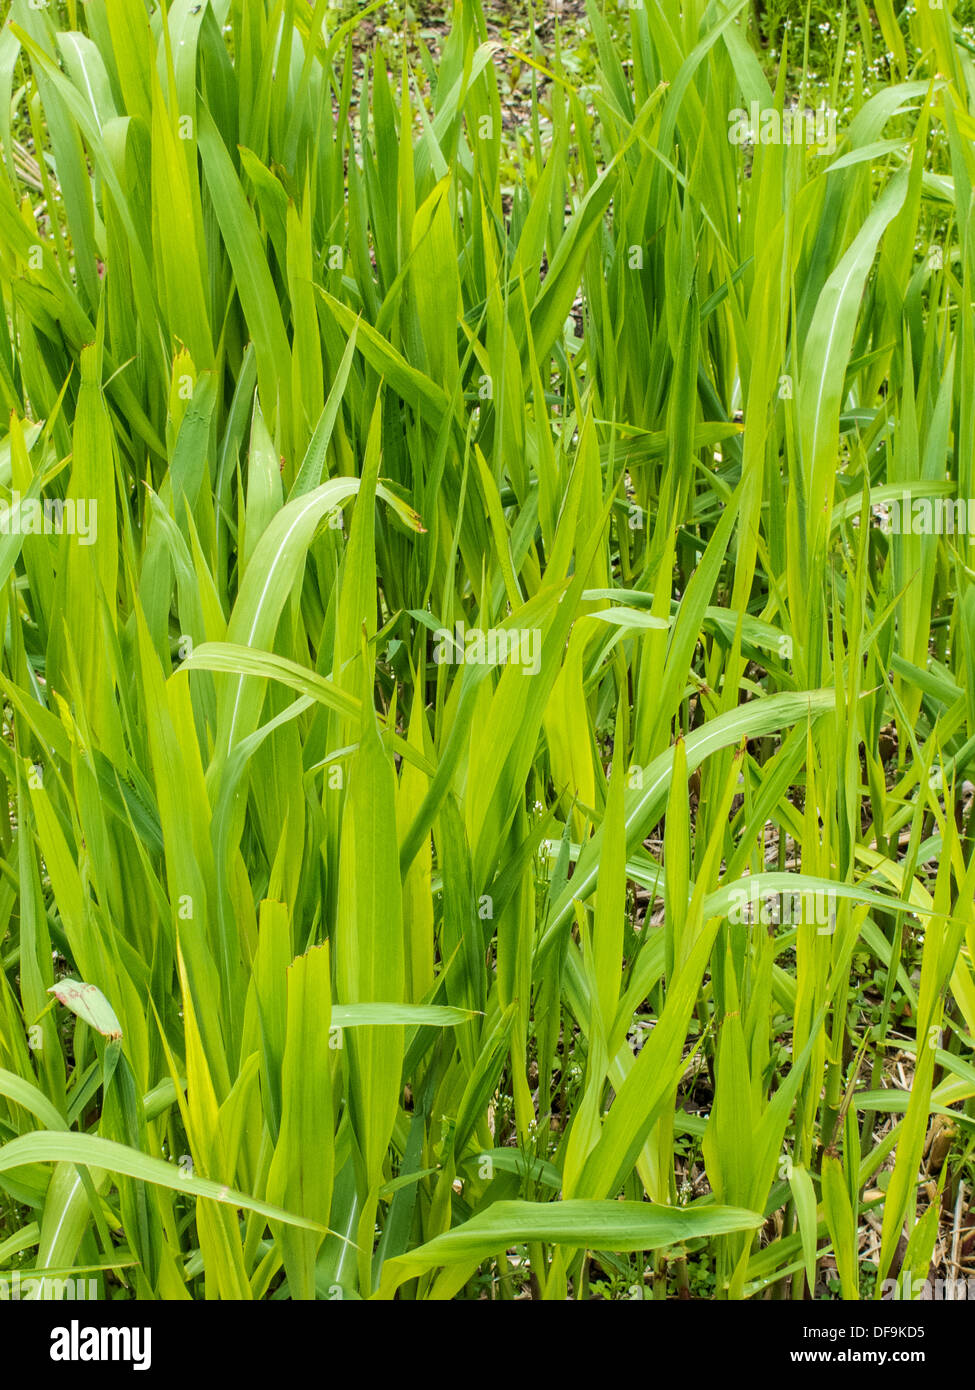 miscanthus-675-grass-grown-as-a-biomass-fuel-DF9KD5.jpg